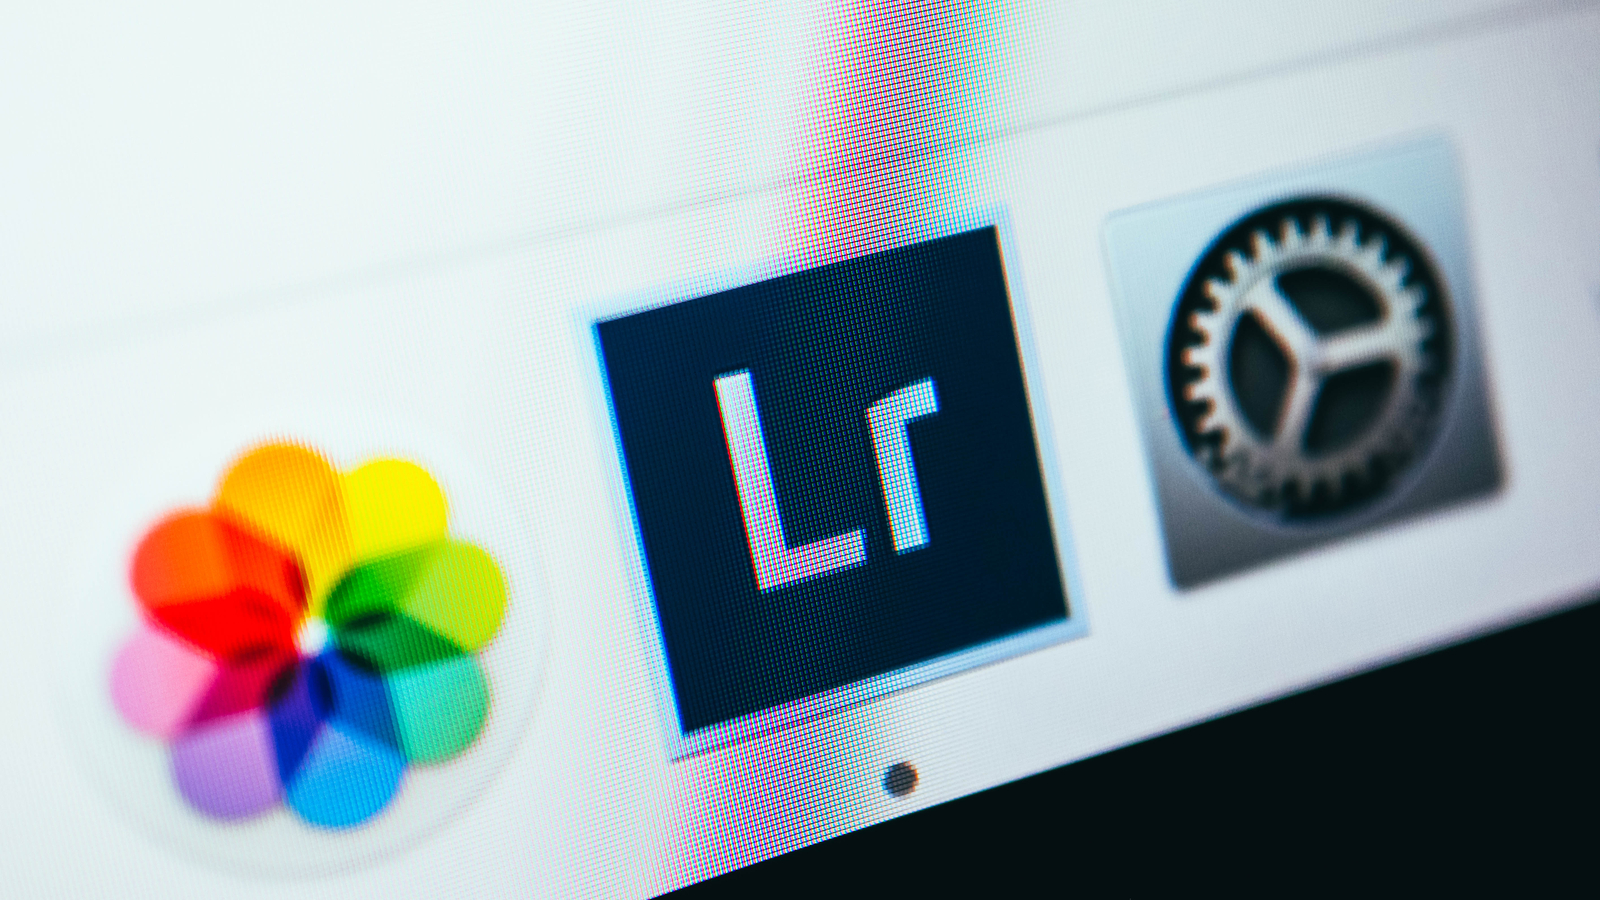 Adobe supprime par erreur (et définitivement) les photos d'utilisateurs de Lightroom